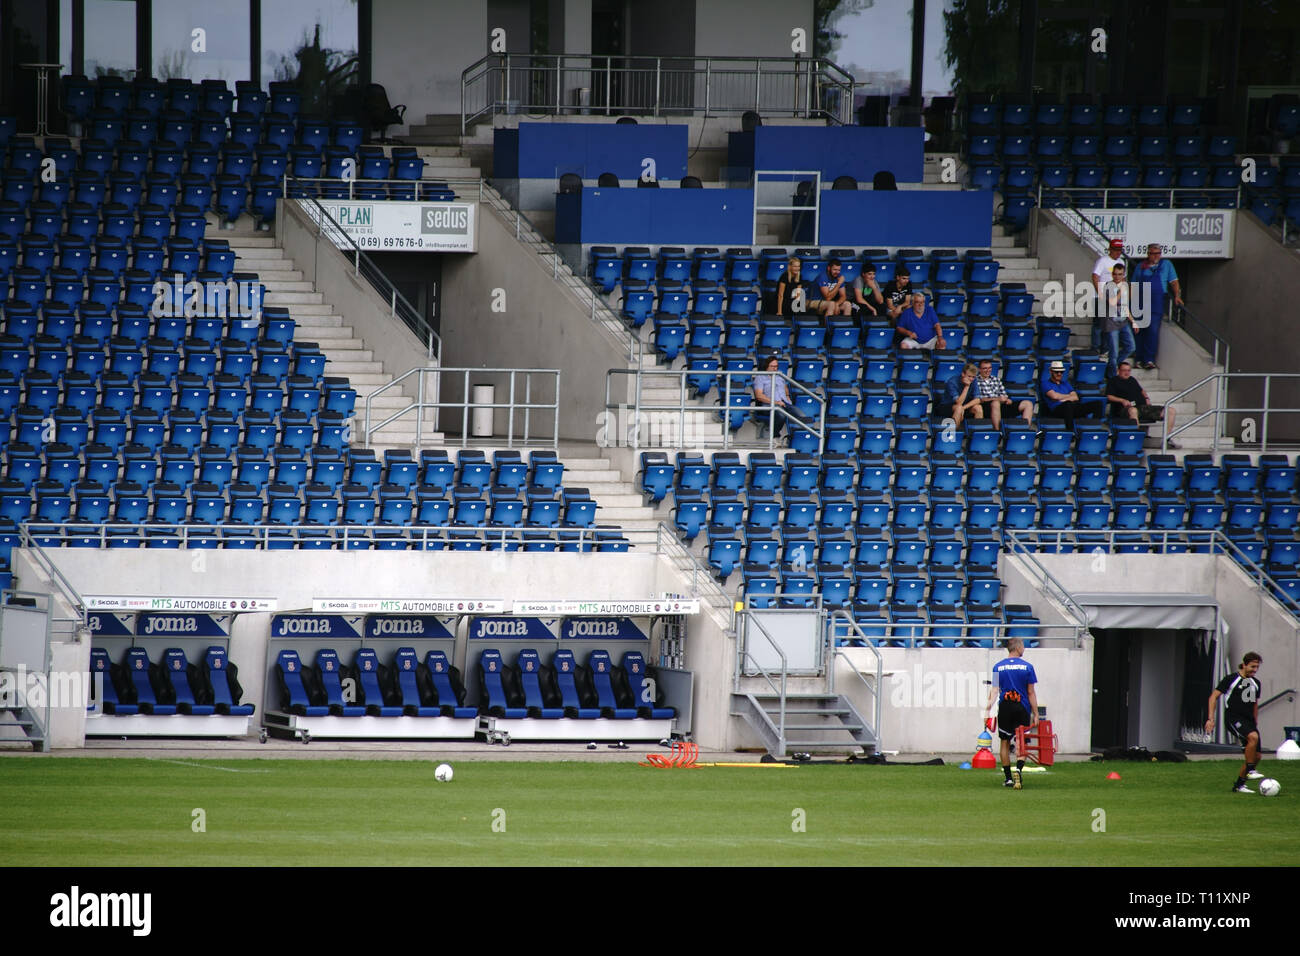 Francfort, Allemagne - 05 août 2018 : Une grande tribune dans le PSD Bank Arena Accueil du club de football FSV Francfort avec des rangées de sièges, panneau publicitaire Banque D'Images